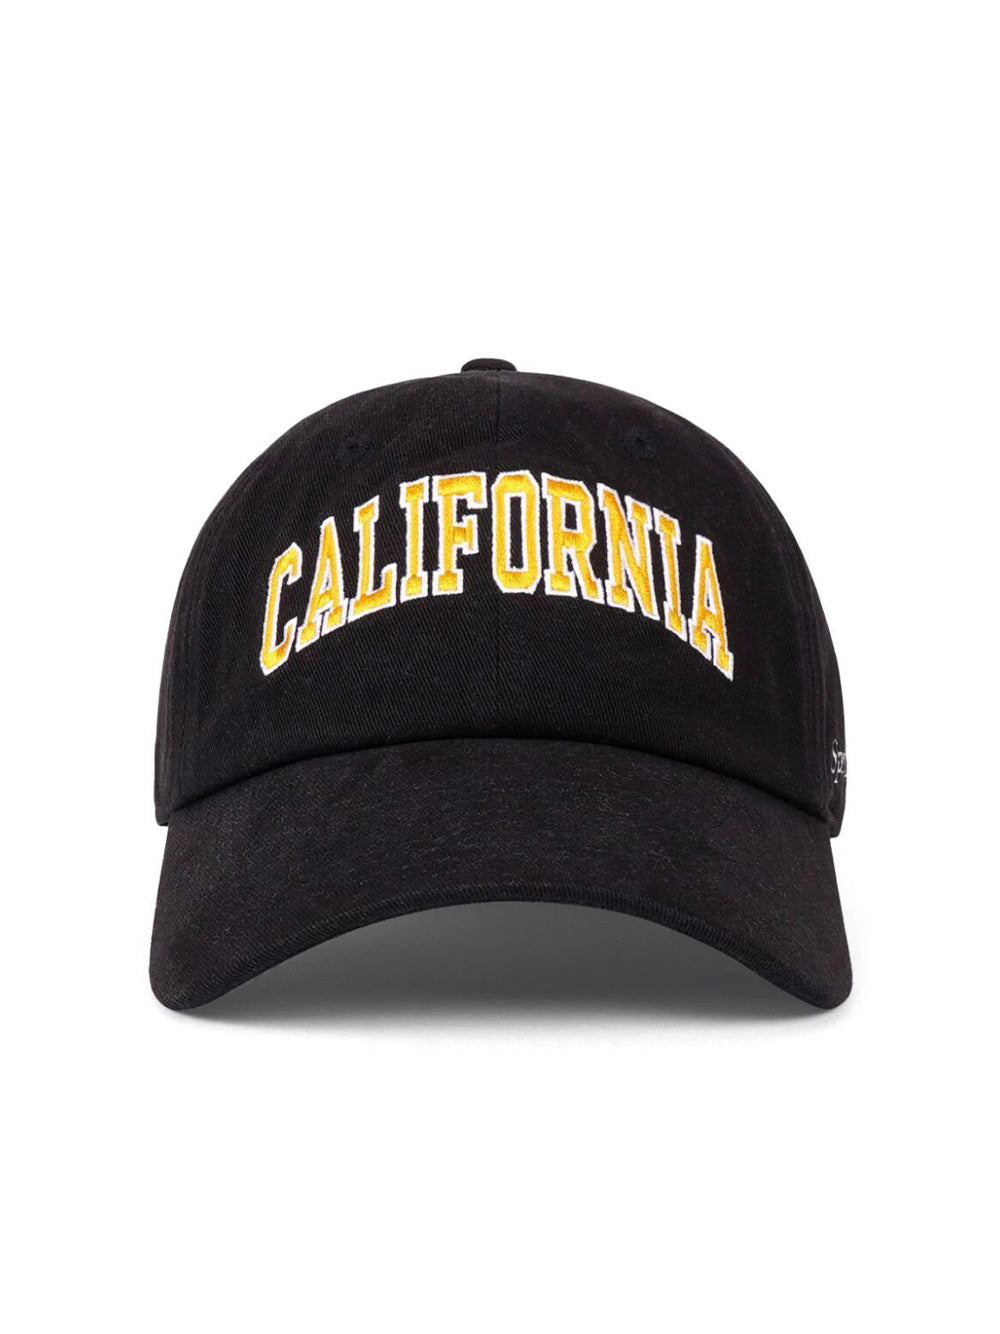 California cap